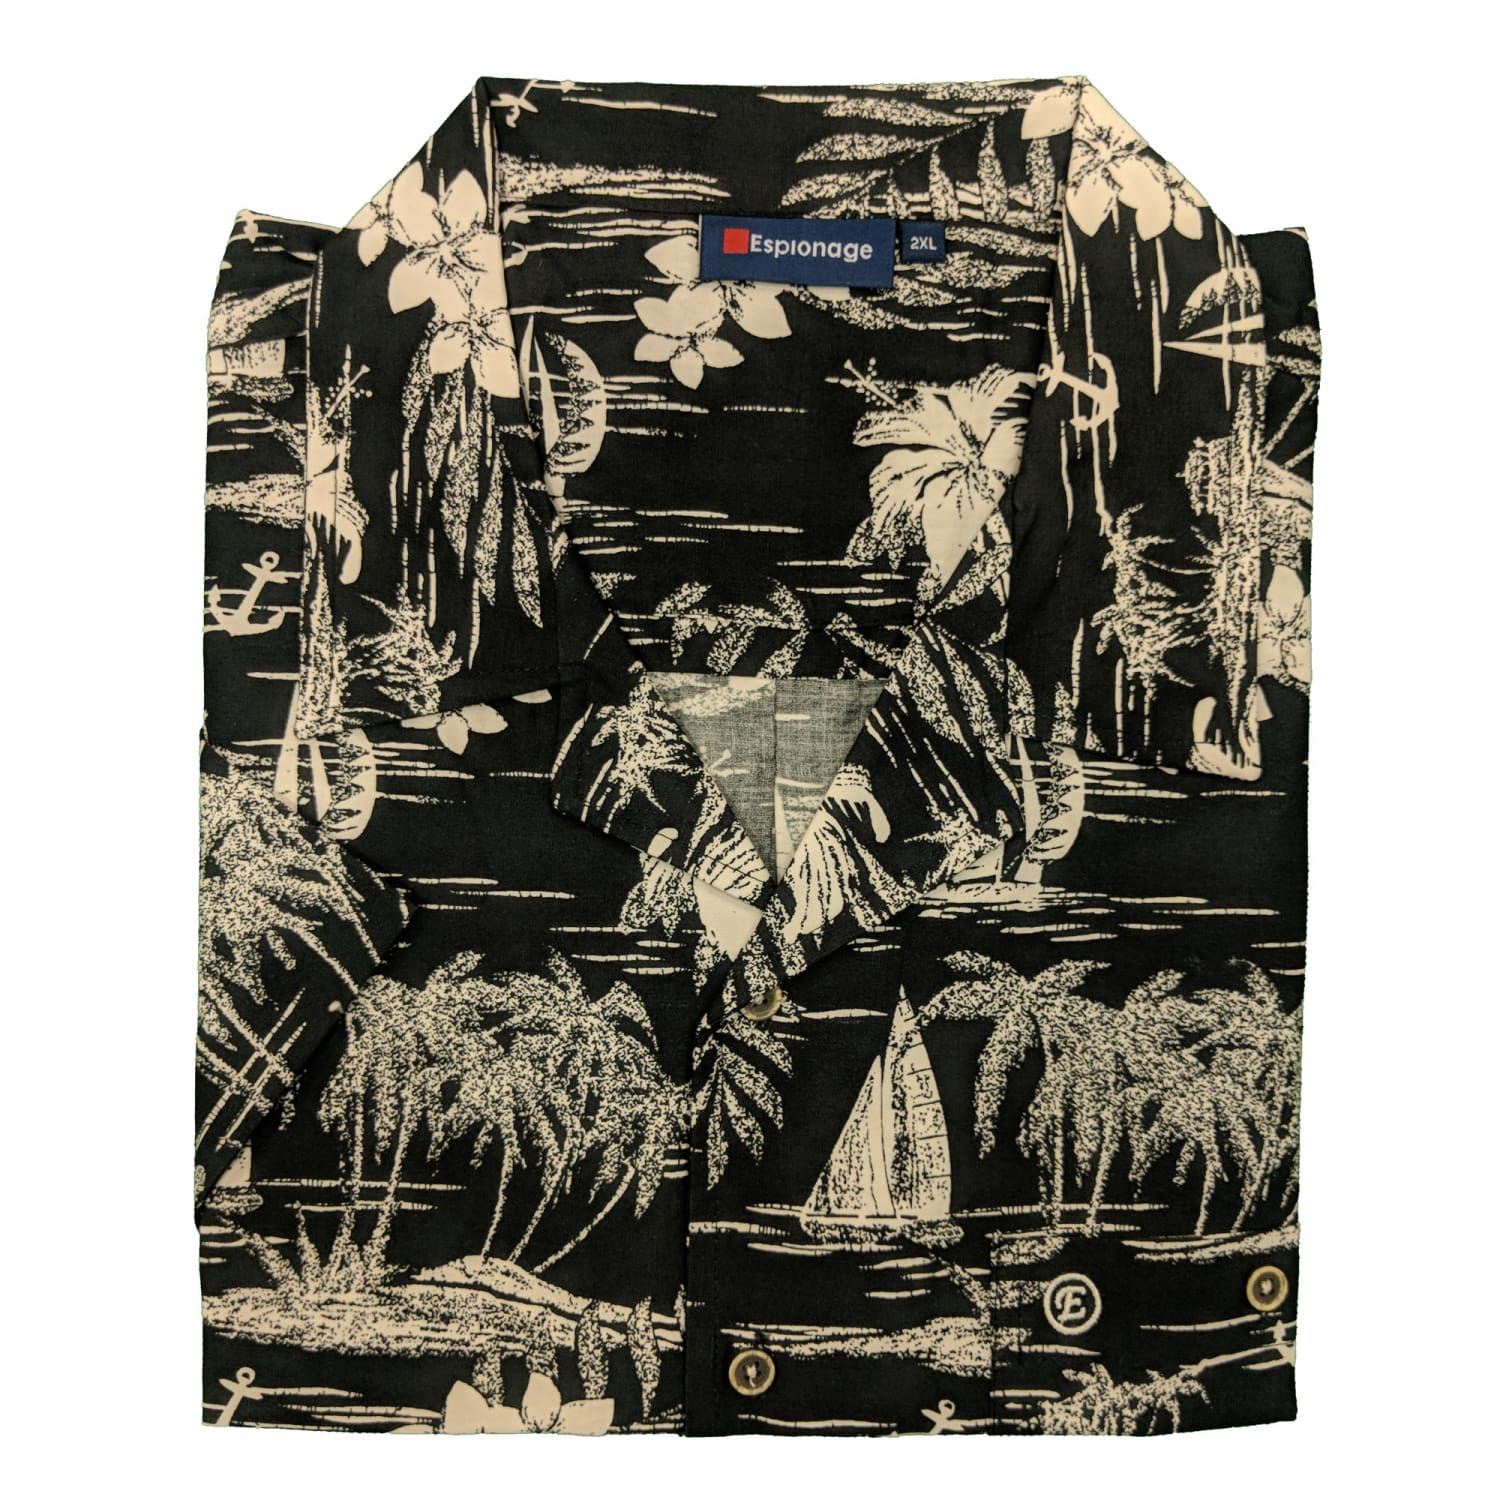 Espionage S/S Hawaiian Shirt - SH259 - Black 1